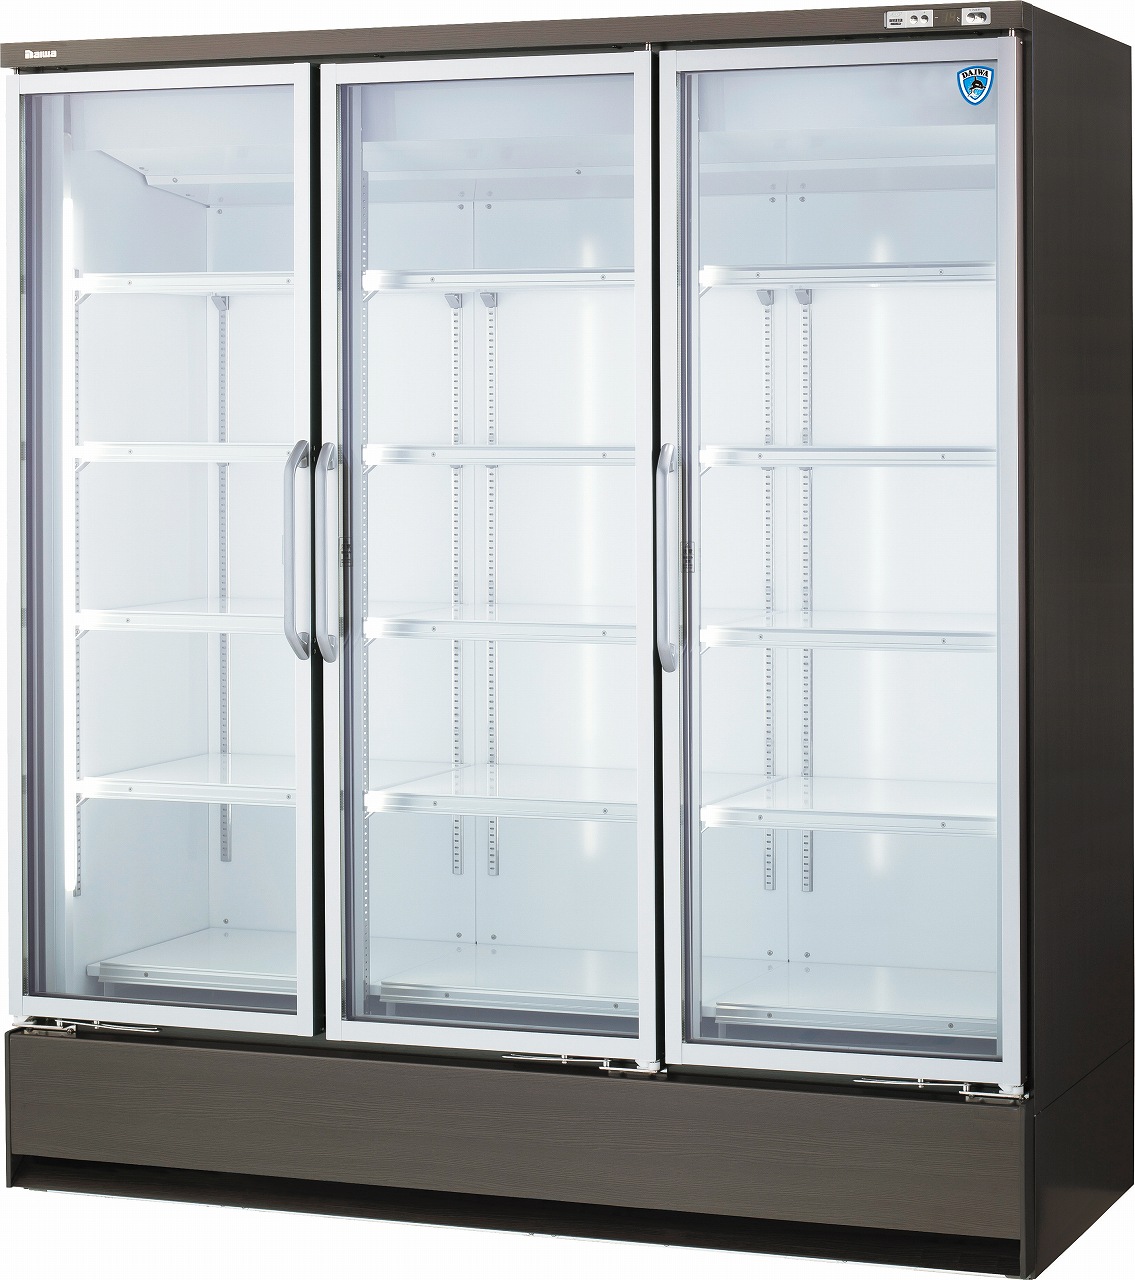 下置型]インバータ制御冷凍・冷蔵ショーケース エコ蔵くん | 店舗用